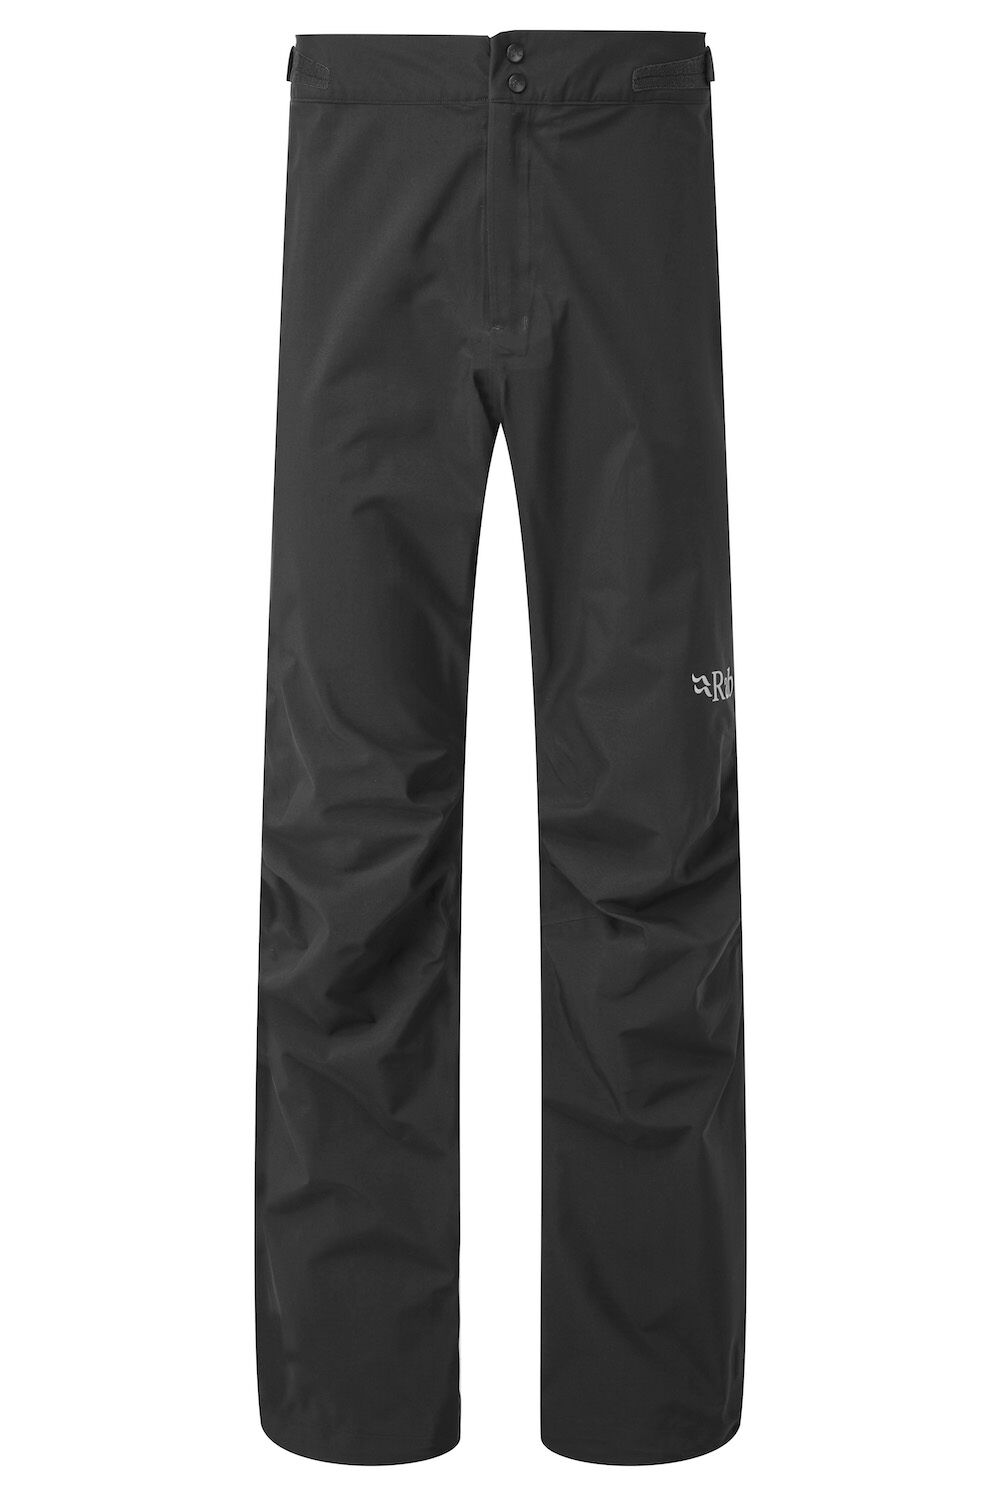 Rab Kangri GTX Pants - pantalón impermeable - Hombre